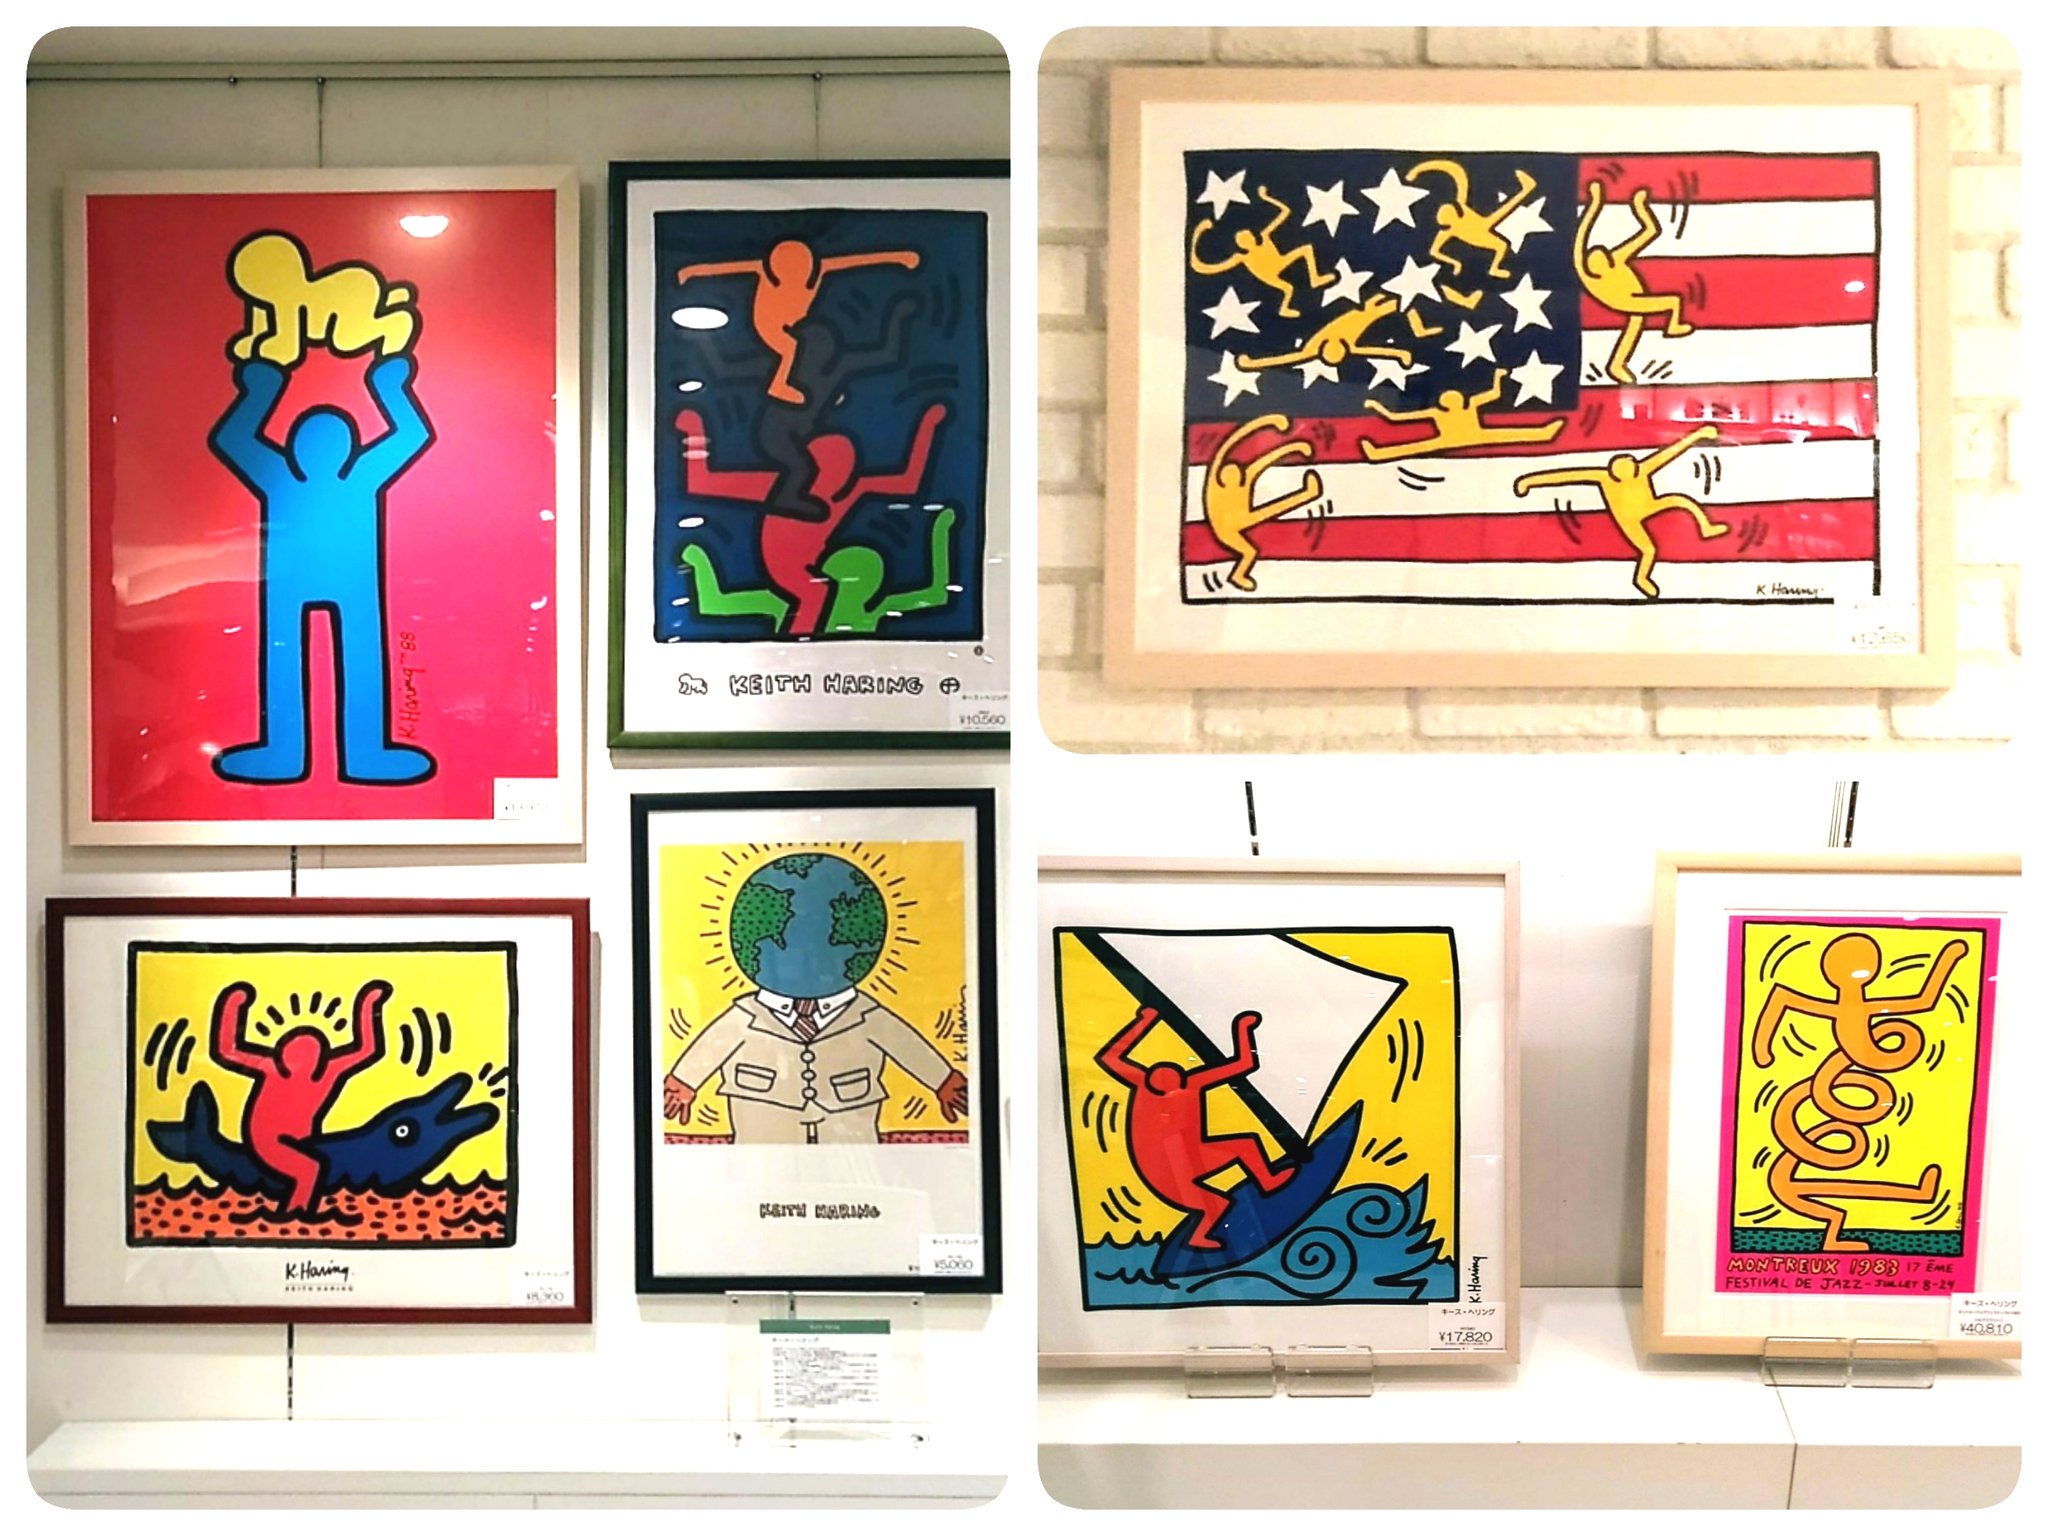 A P J アートプリントジャパン 直営shop キース へリング特集 阪急百貨店10階アートアップデコにて開催中 会期 4 14 水 5 4 火 祝 1980代のアメリカを代表するアーティスト キース ヘリングのポスター額装品を集めました 色鮮やかな世界をお